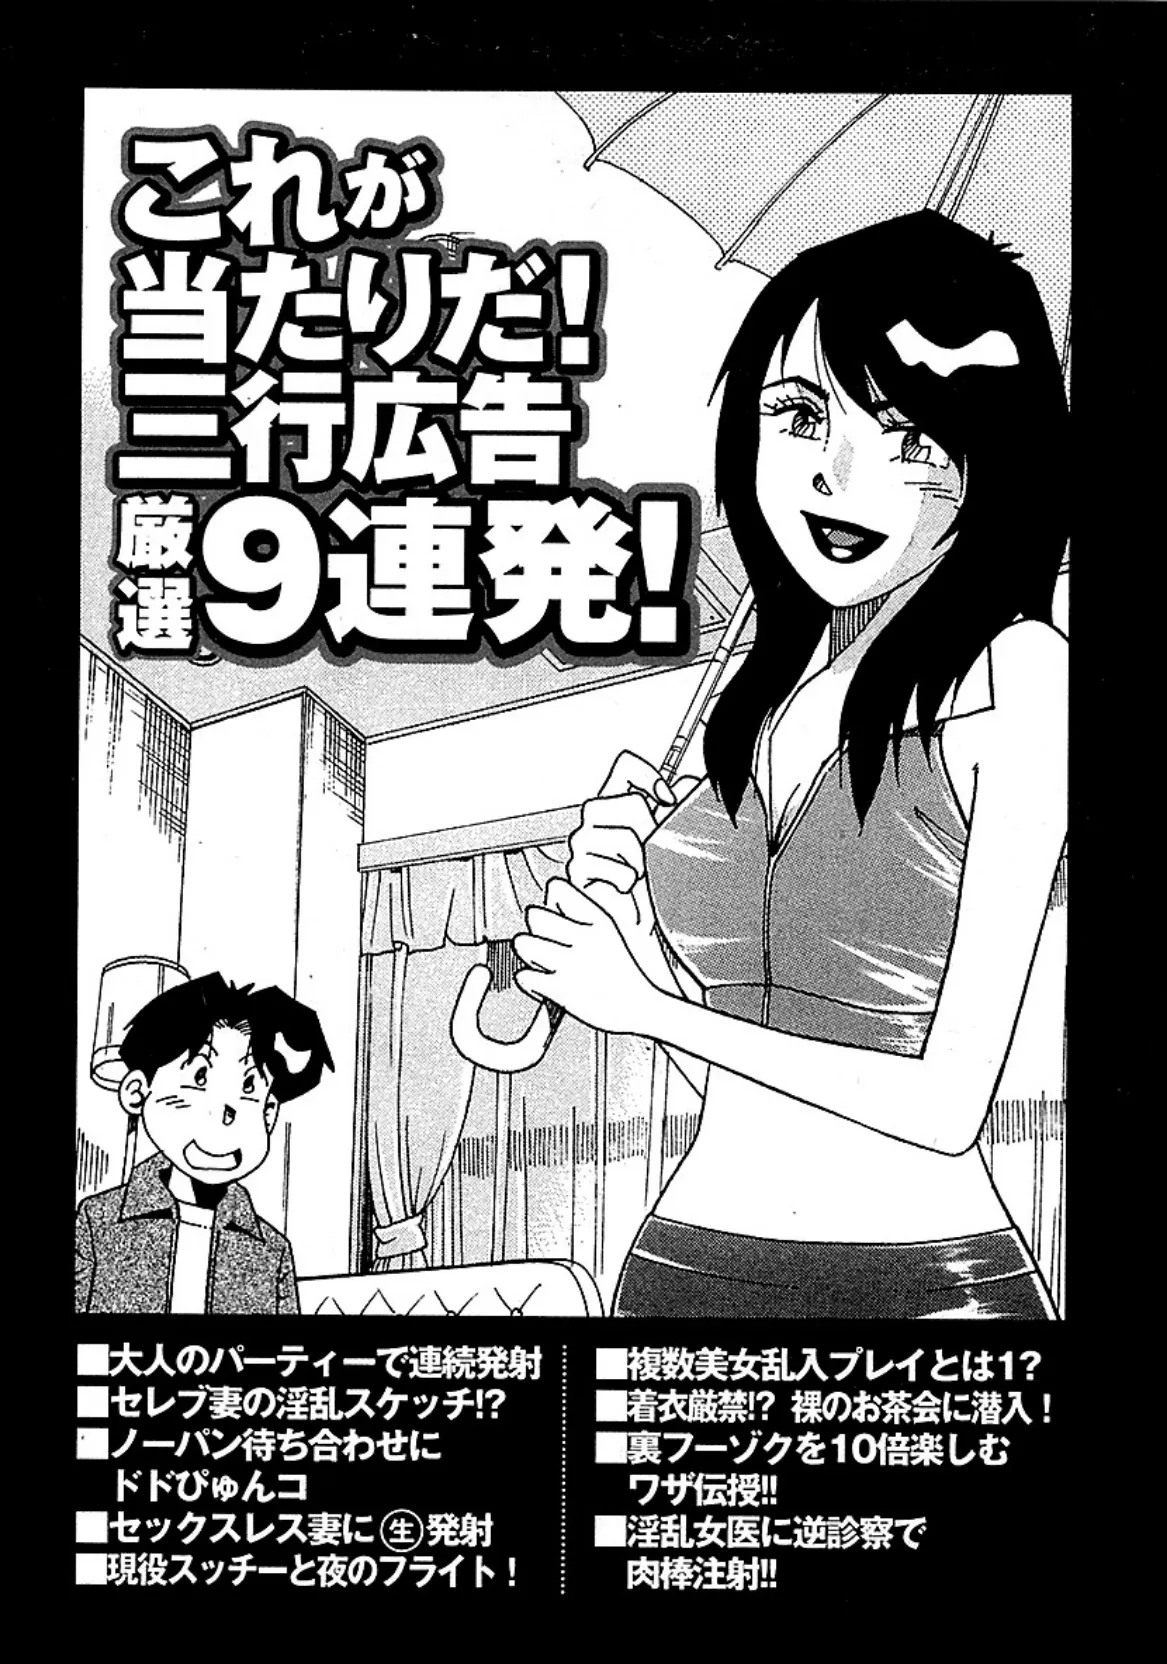 山崎大紀の本当にあったHな話 三行広告スペシャル 完全版 3ページ